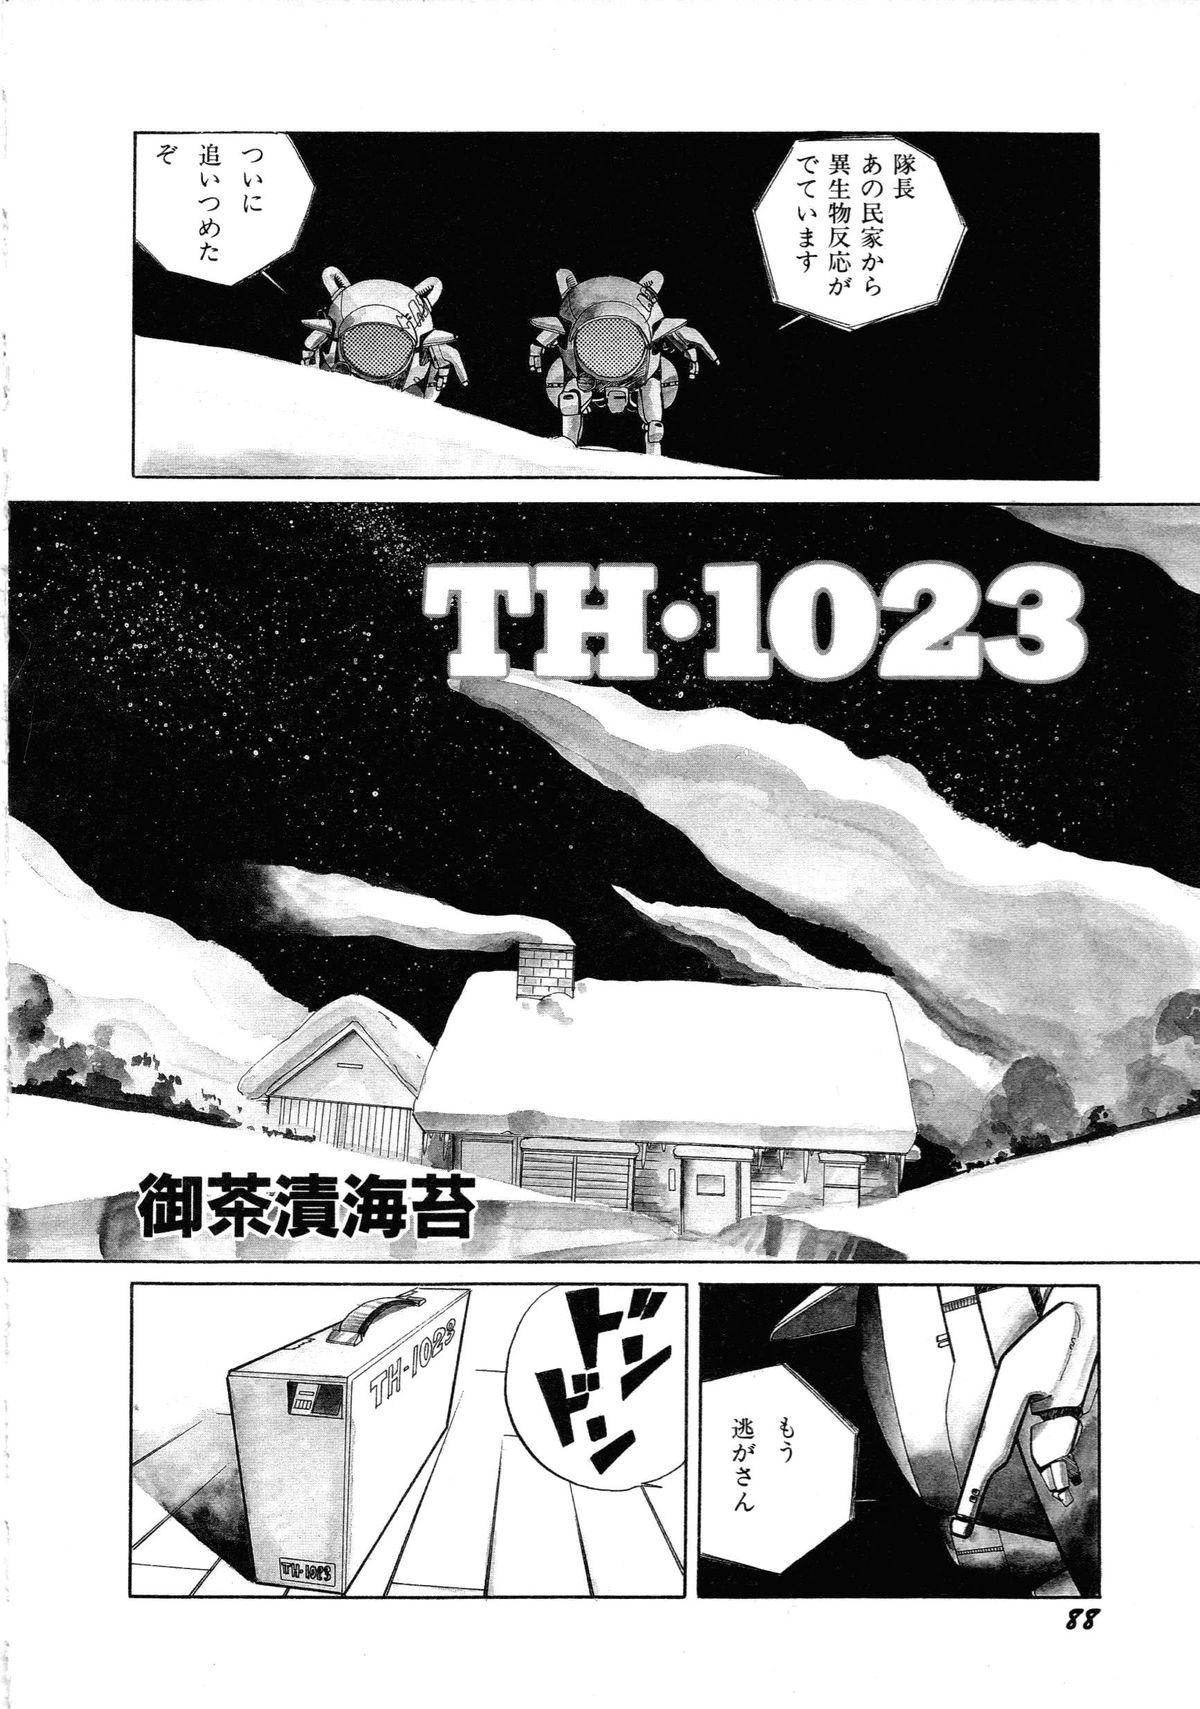 [Anthology] Robot & Bishoujo Kessakusen - Lemon People 1982-1986 91